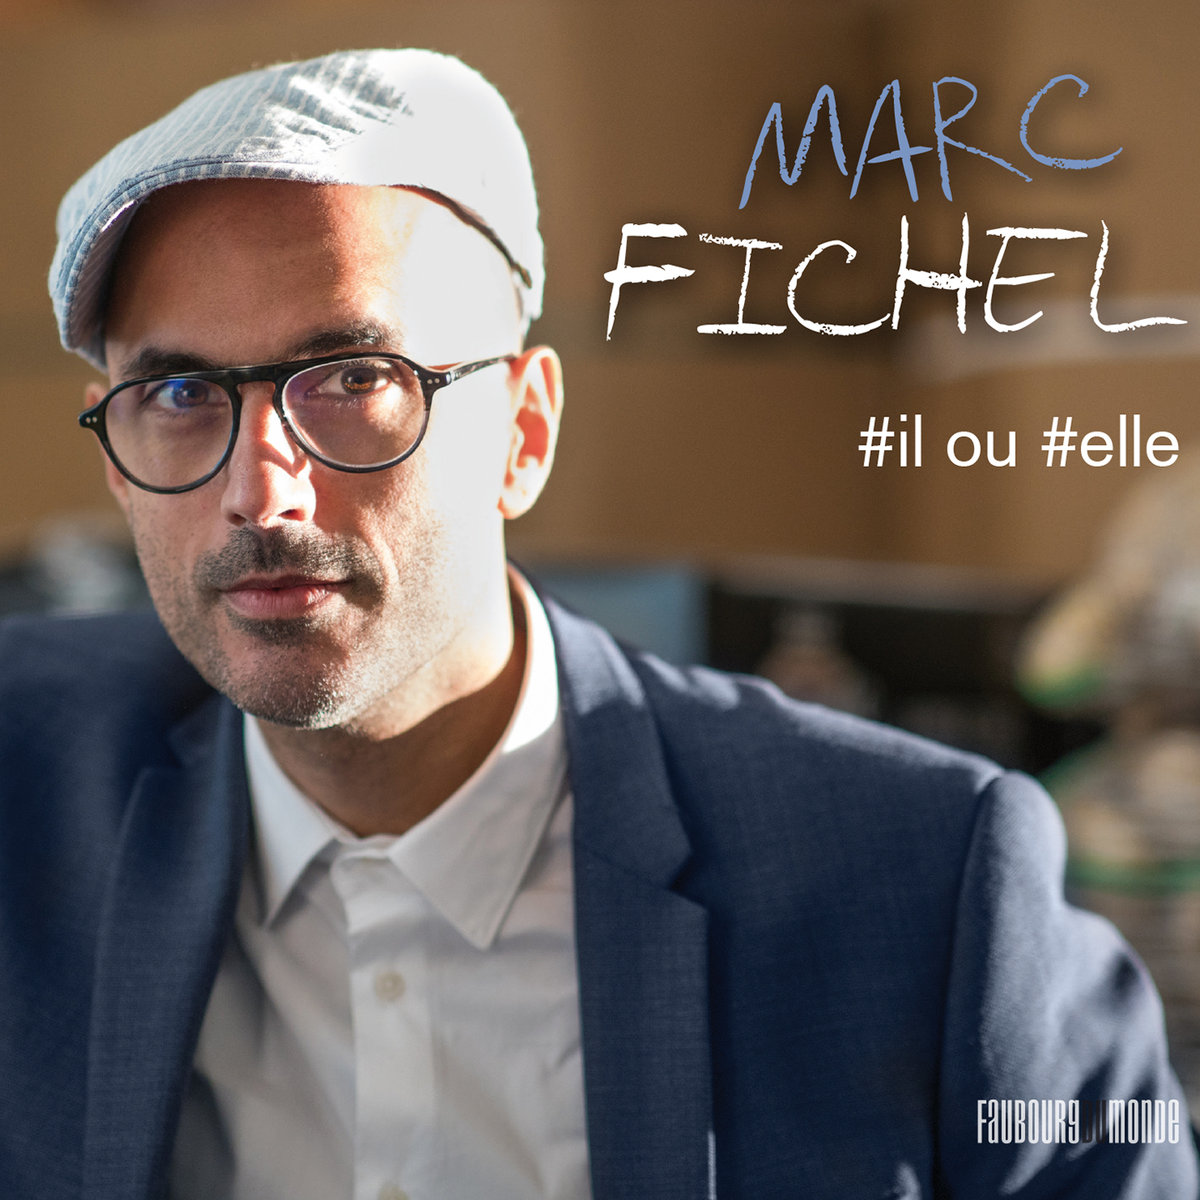 Marc Fichel, notre chanson découverte avec le disque #il ou #elle